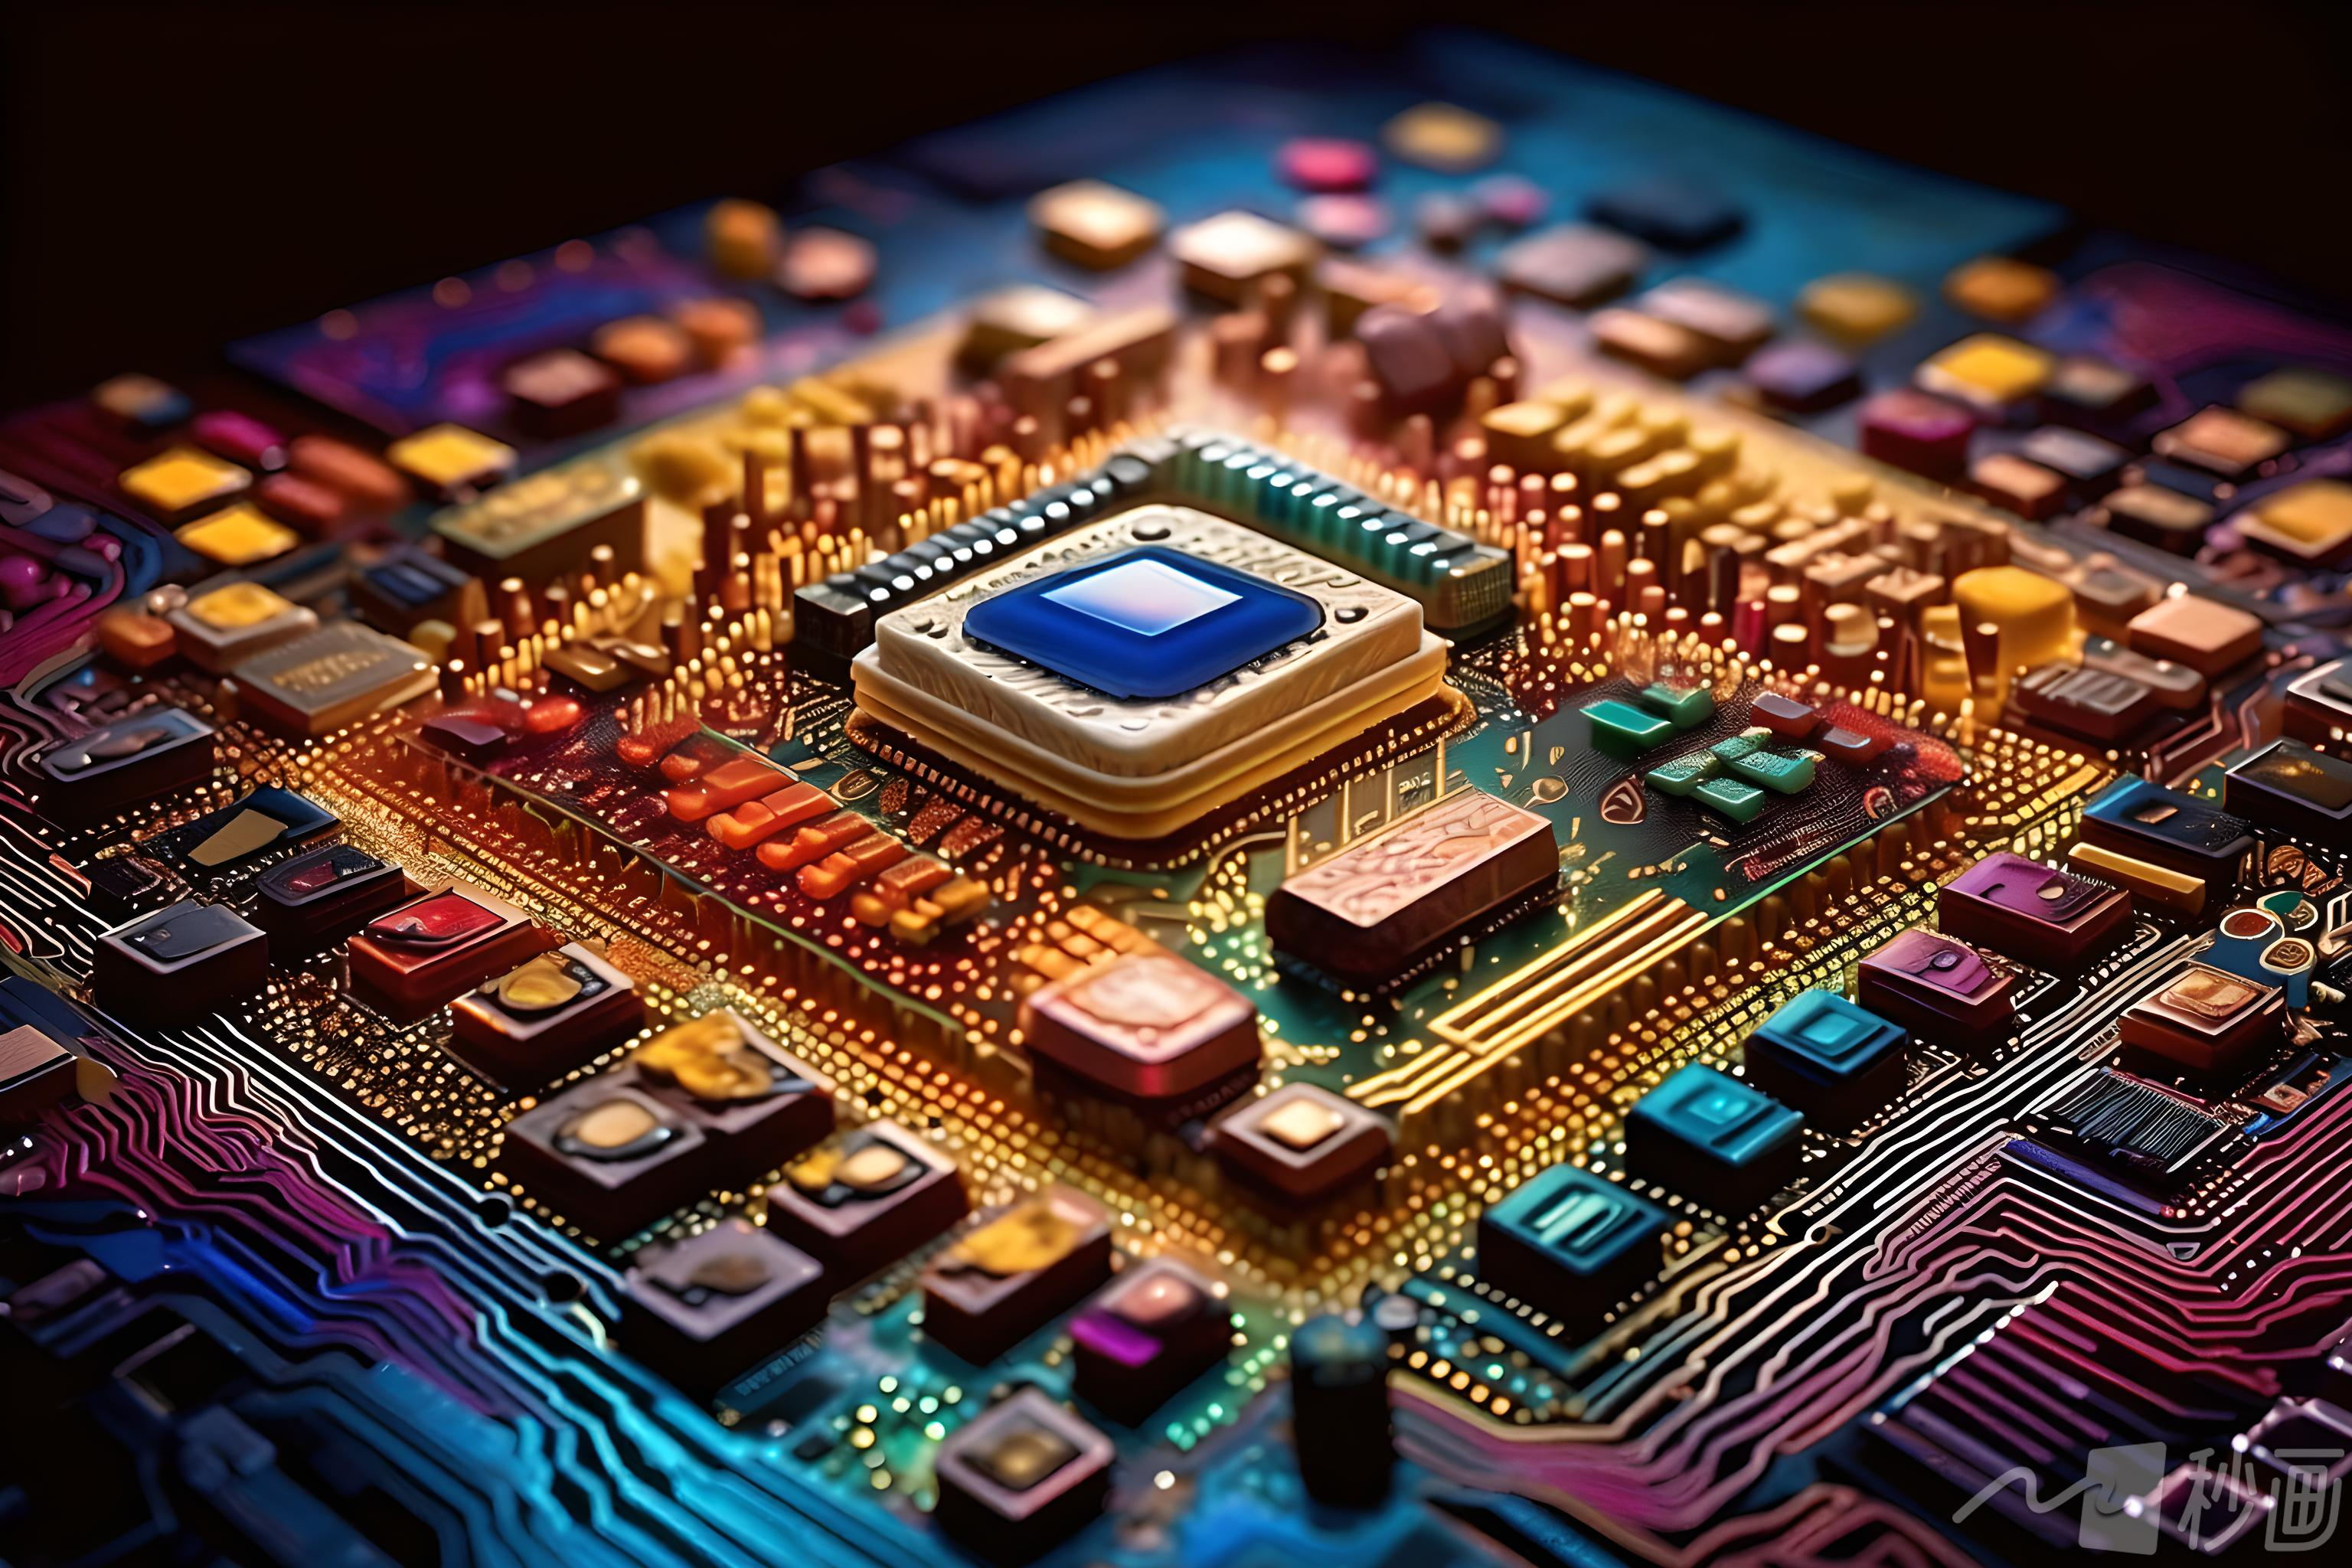 深度解析英伟达GT730M显卡性能规格及适用场景，揭秘NvidiaGT730M的技术细节和市场地位  第6张